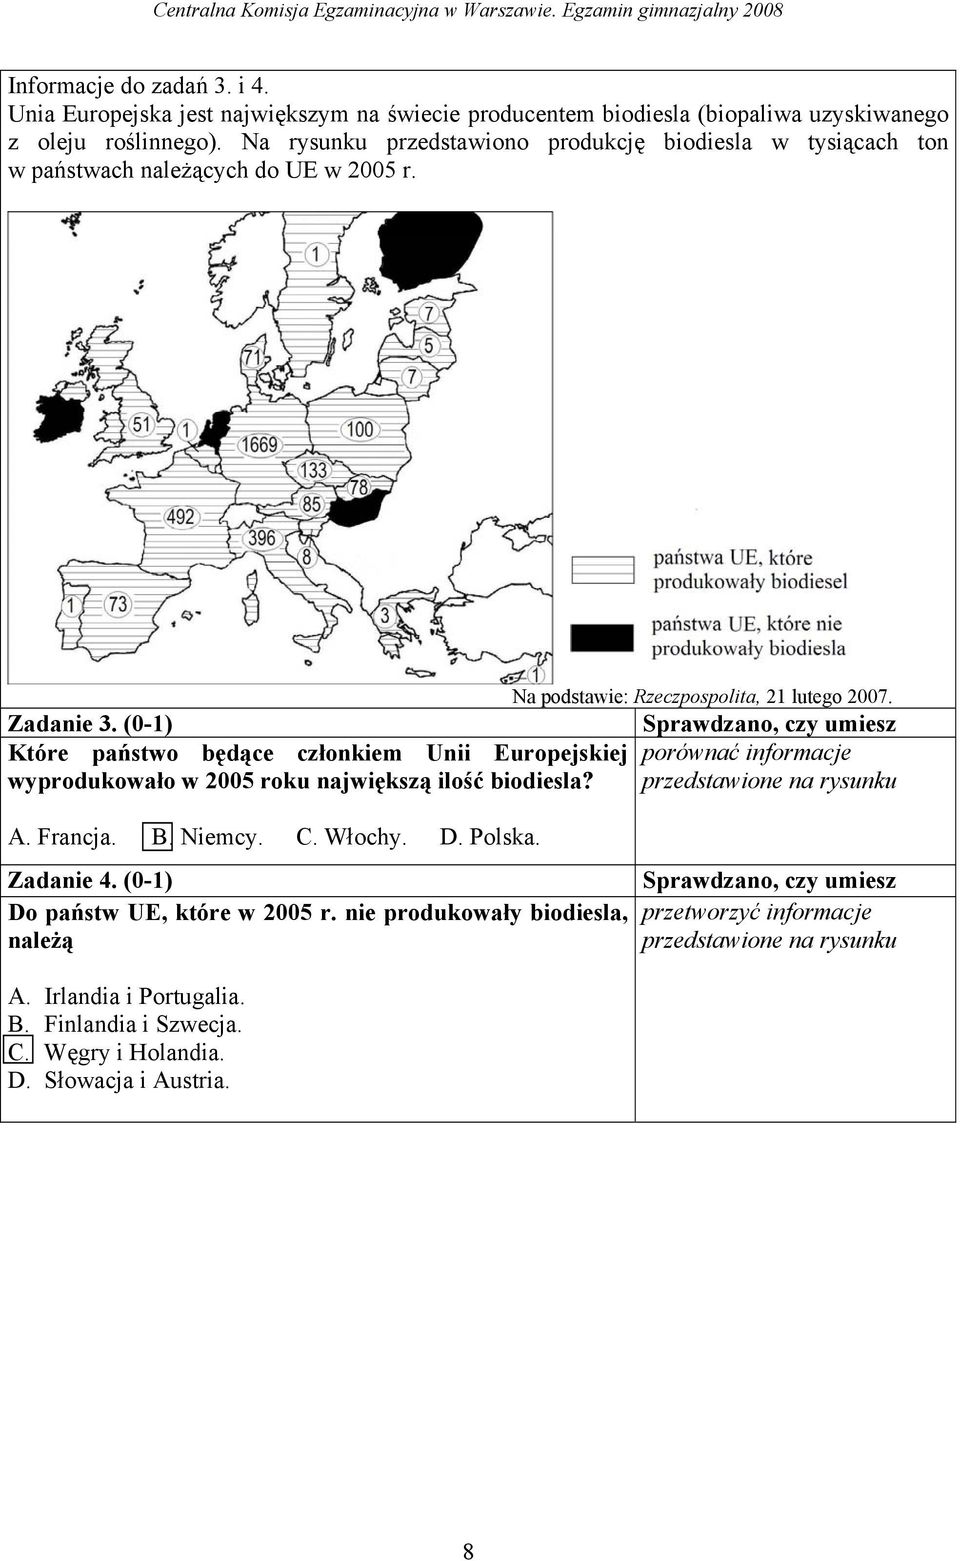 (0-1) Które państwo będące członkiem Unii Europejskiej porównać informacje wyprodukowało w 2005 roku największą ilość biodiesla? przedstawione na rysunku A. Francja. B. Niemcy. C.